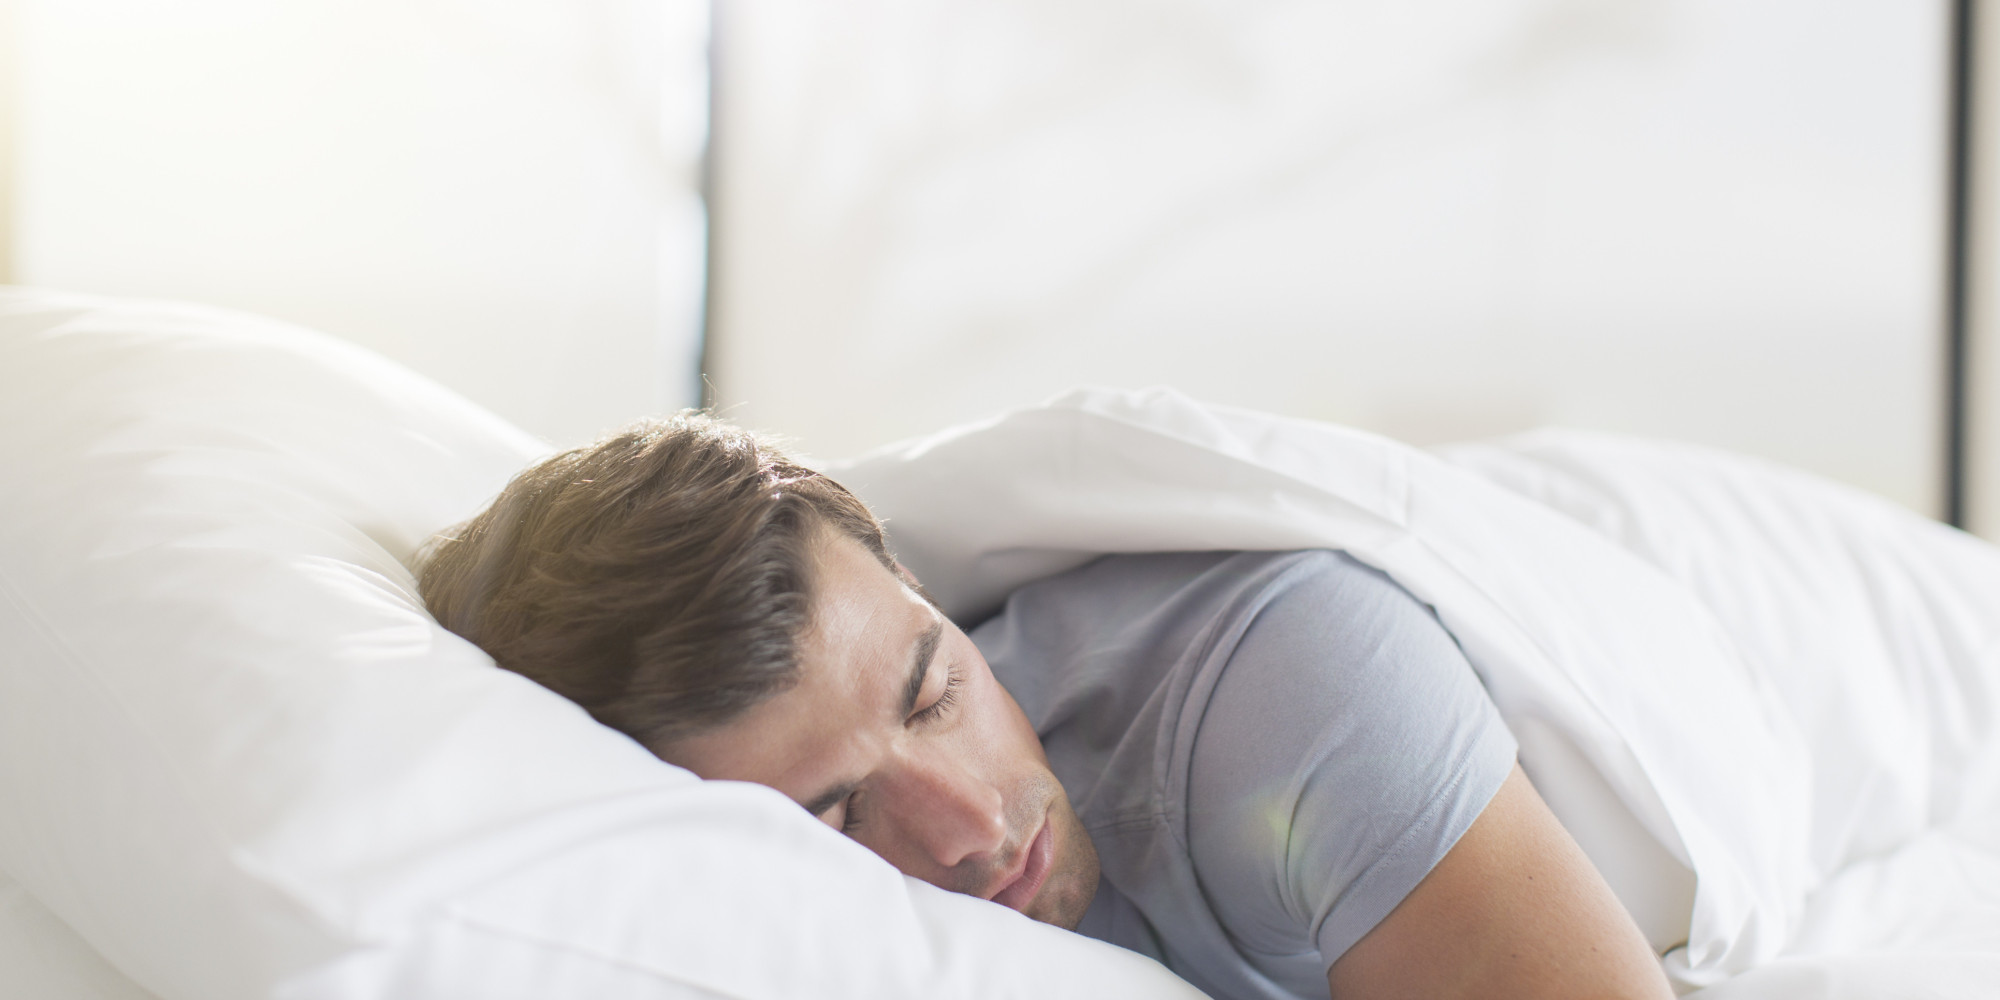 Giấc ngủ đóng vai trò quan trọng đối với sức khỏe sinh sản của nam giới. Hãy xem những bức ảnh đầu tiên về giấc ngủ và khả năng sinh sản nam giới để tìm hiểu những bí mật đằng sau chúng.